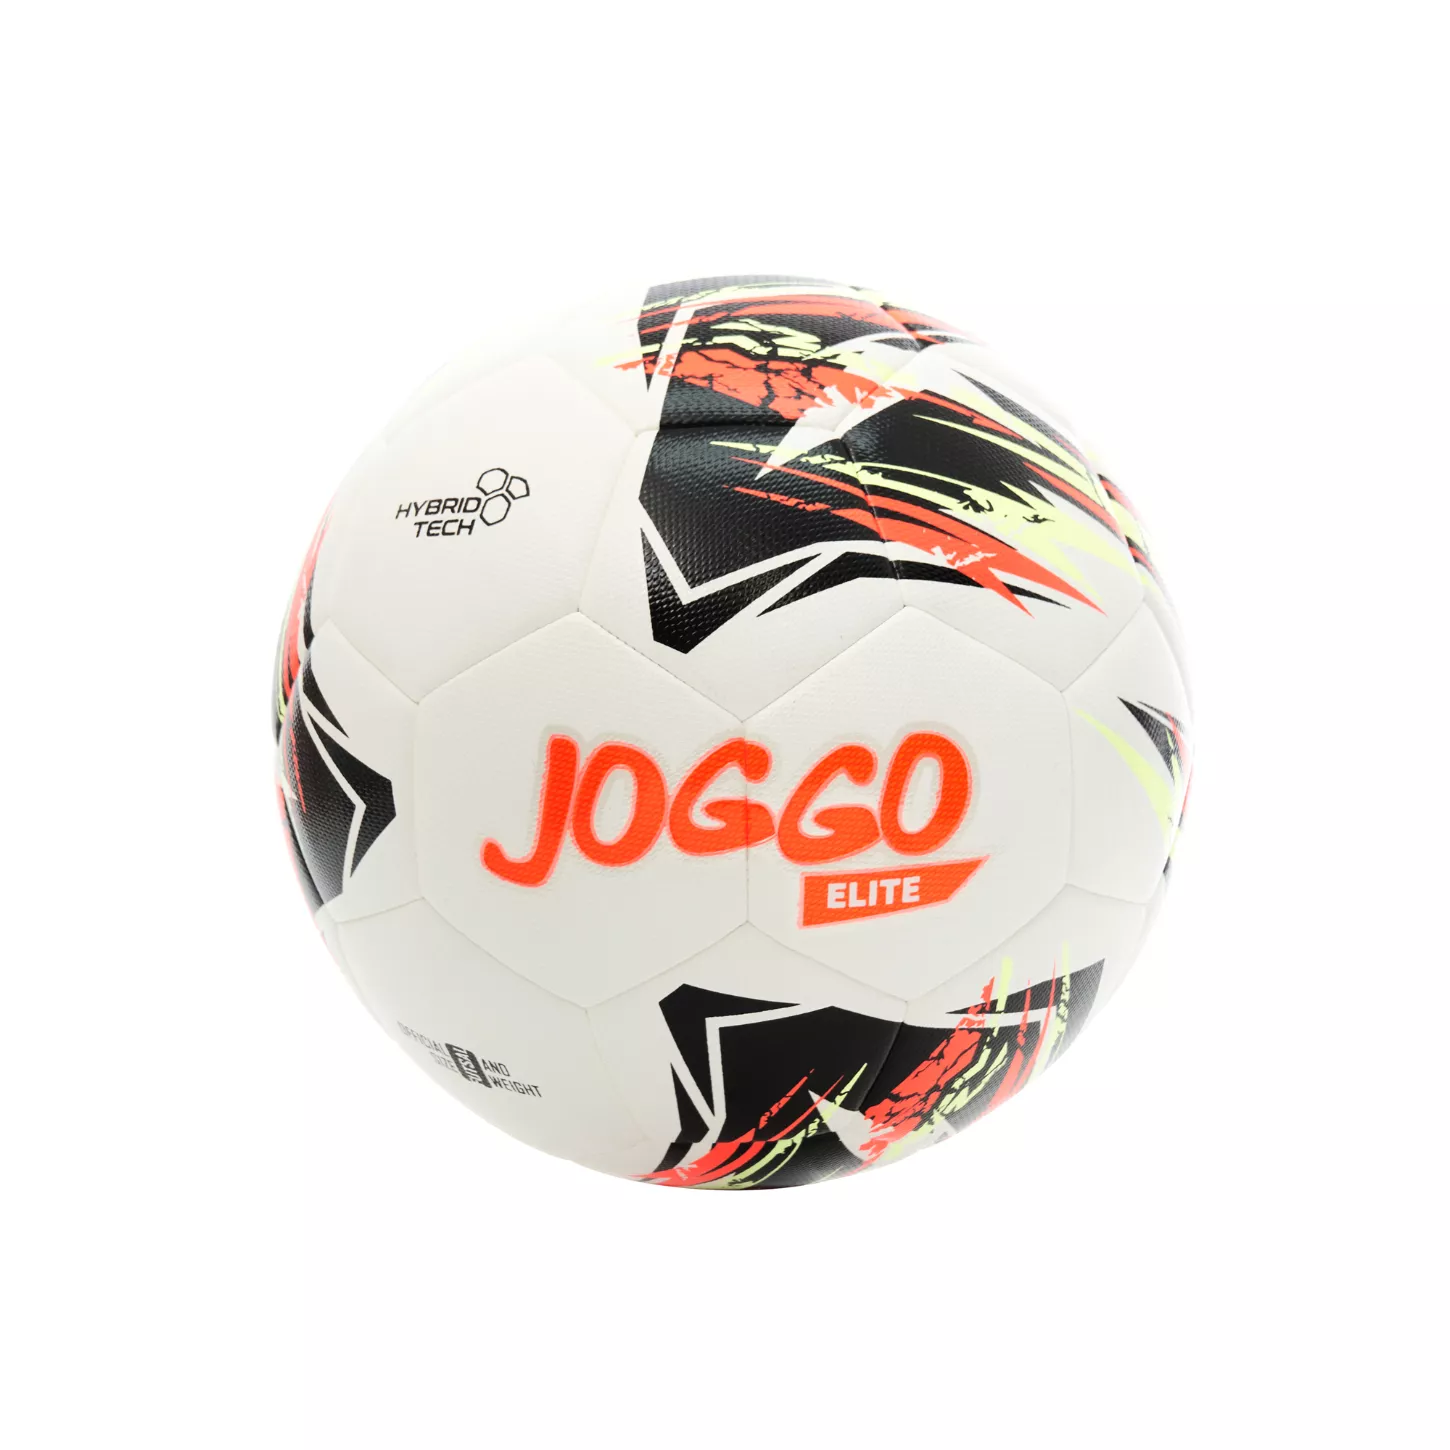 JOGGO ELITE Balón oficial de futsal tamaño 4 IS-22-111